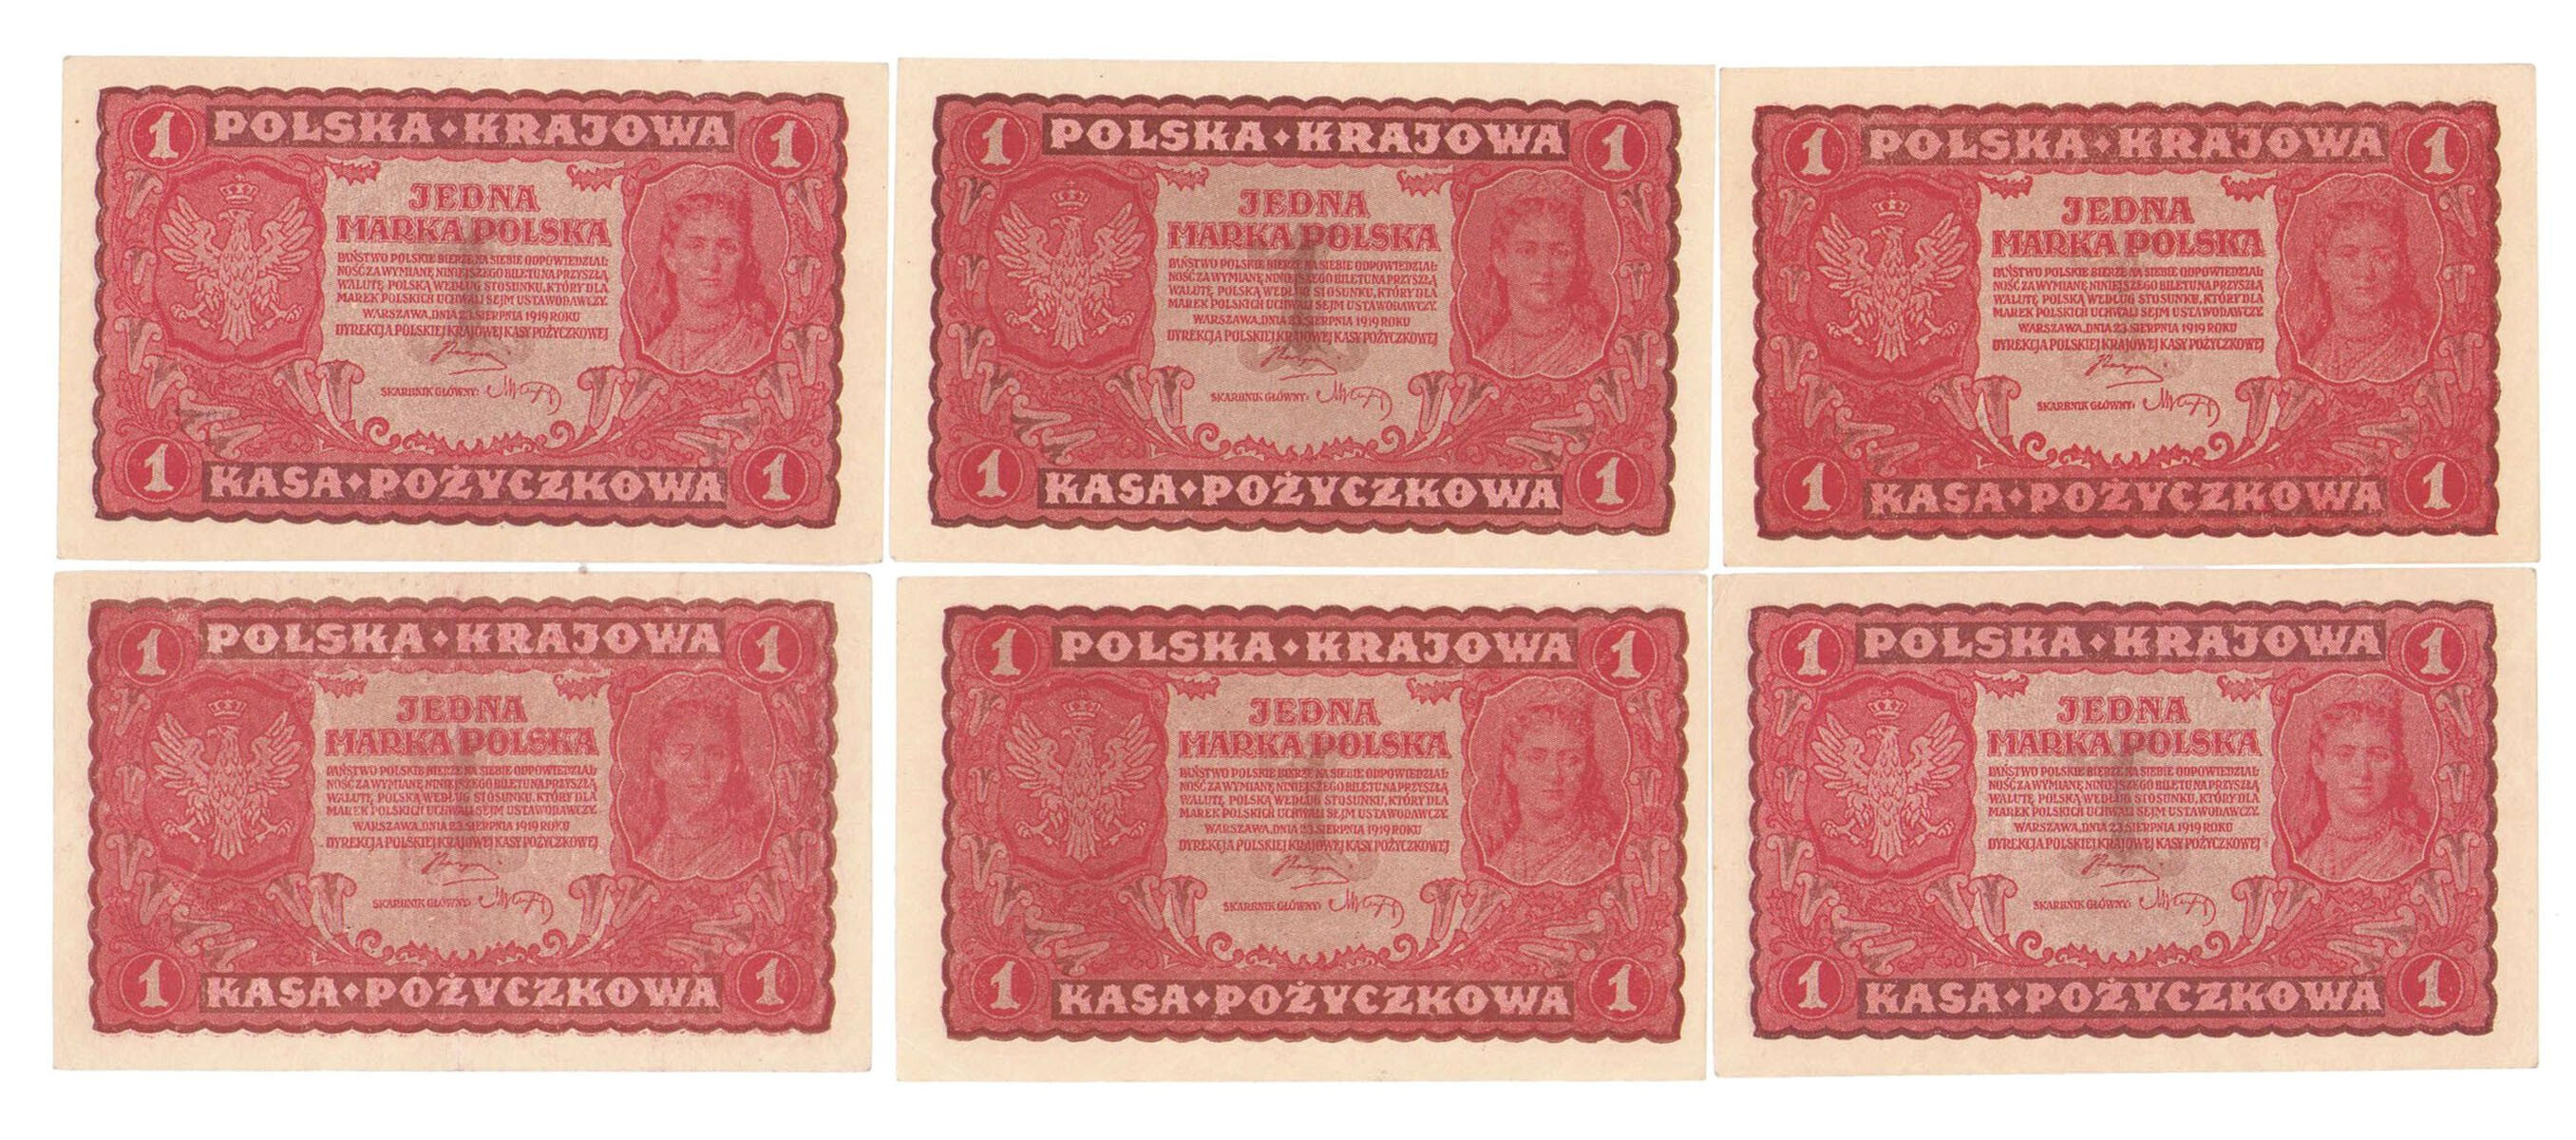 1 marka polska 1919, zestaw 6 banknotów